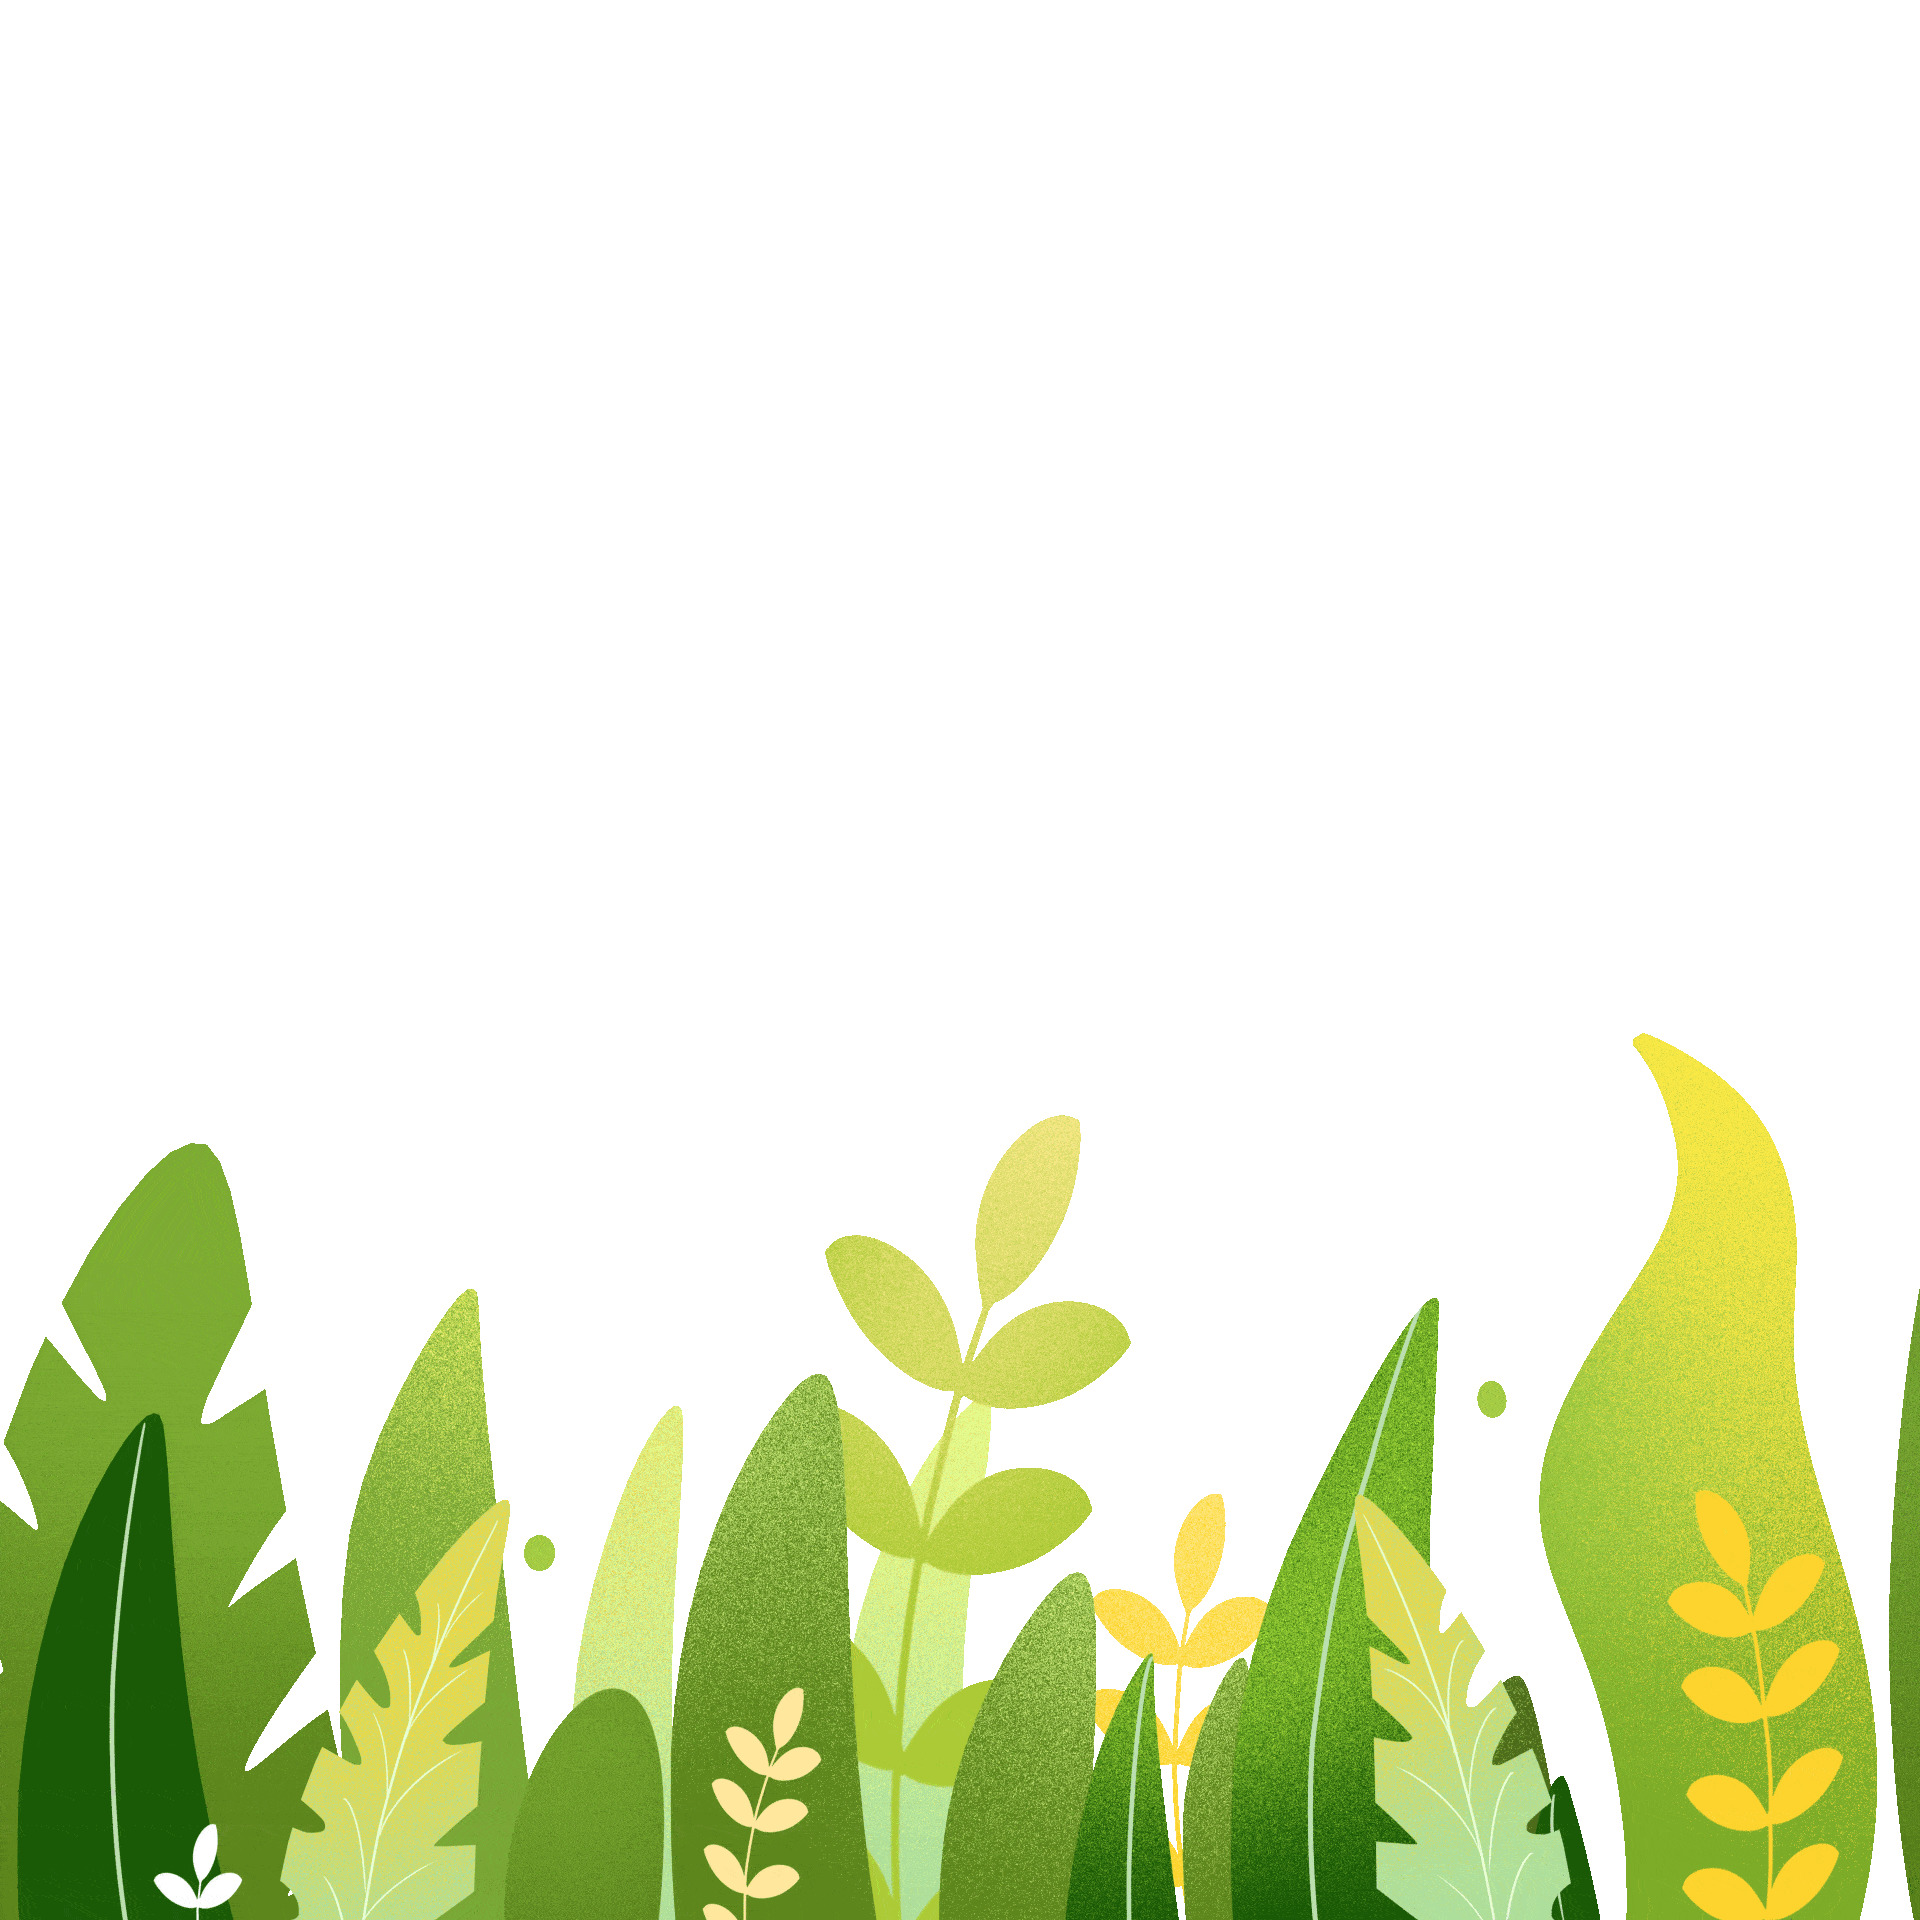 淡绿色草丛水草卡通元素动态GIF图叶子草丛元素